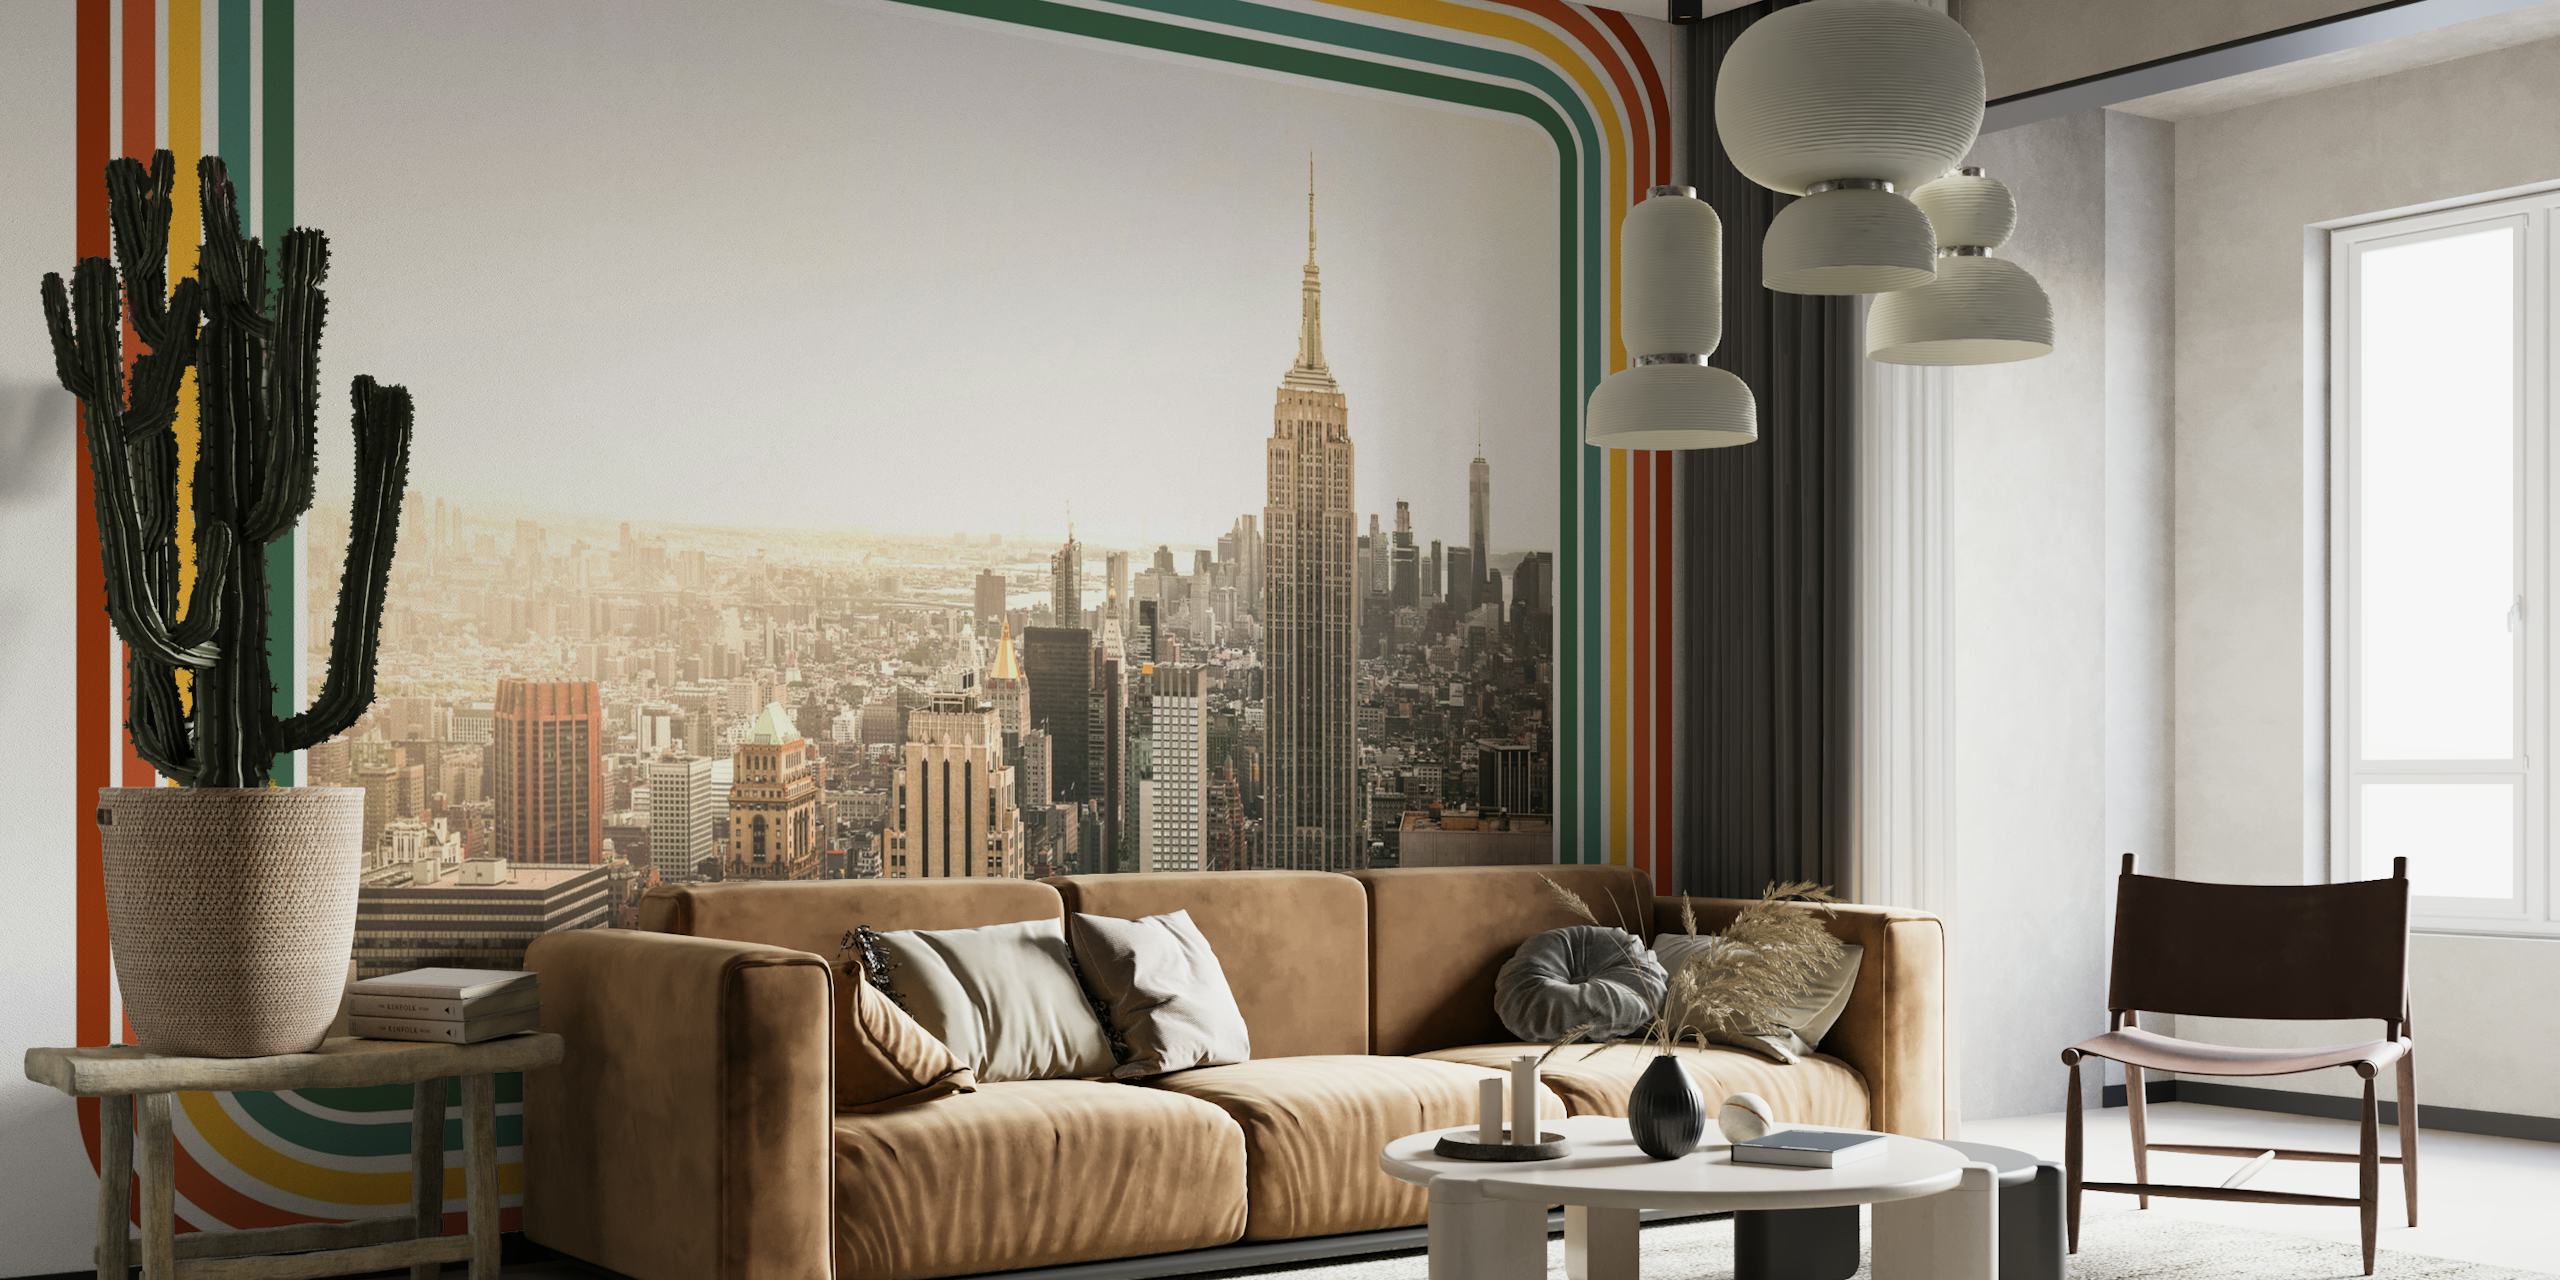 NYC Vintage View behang